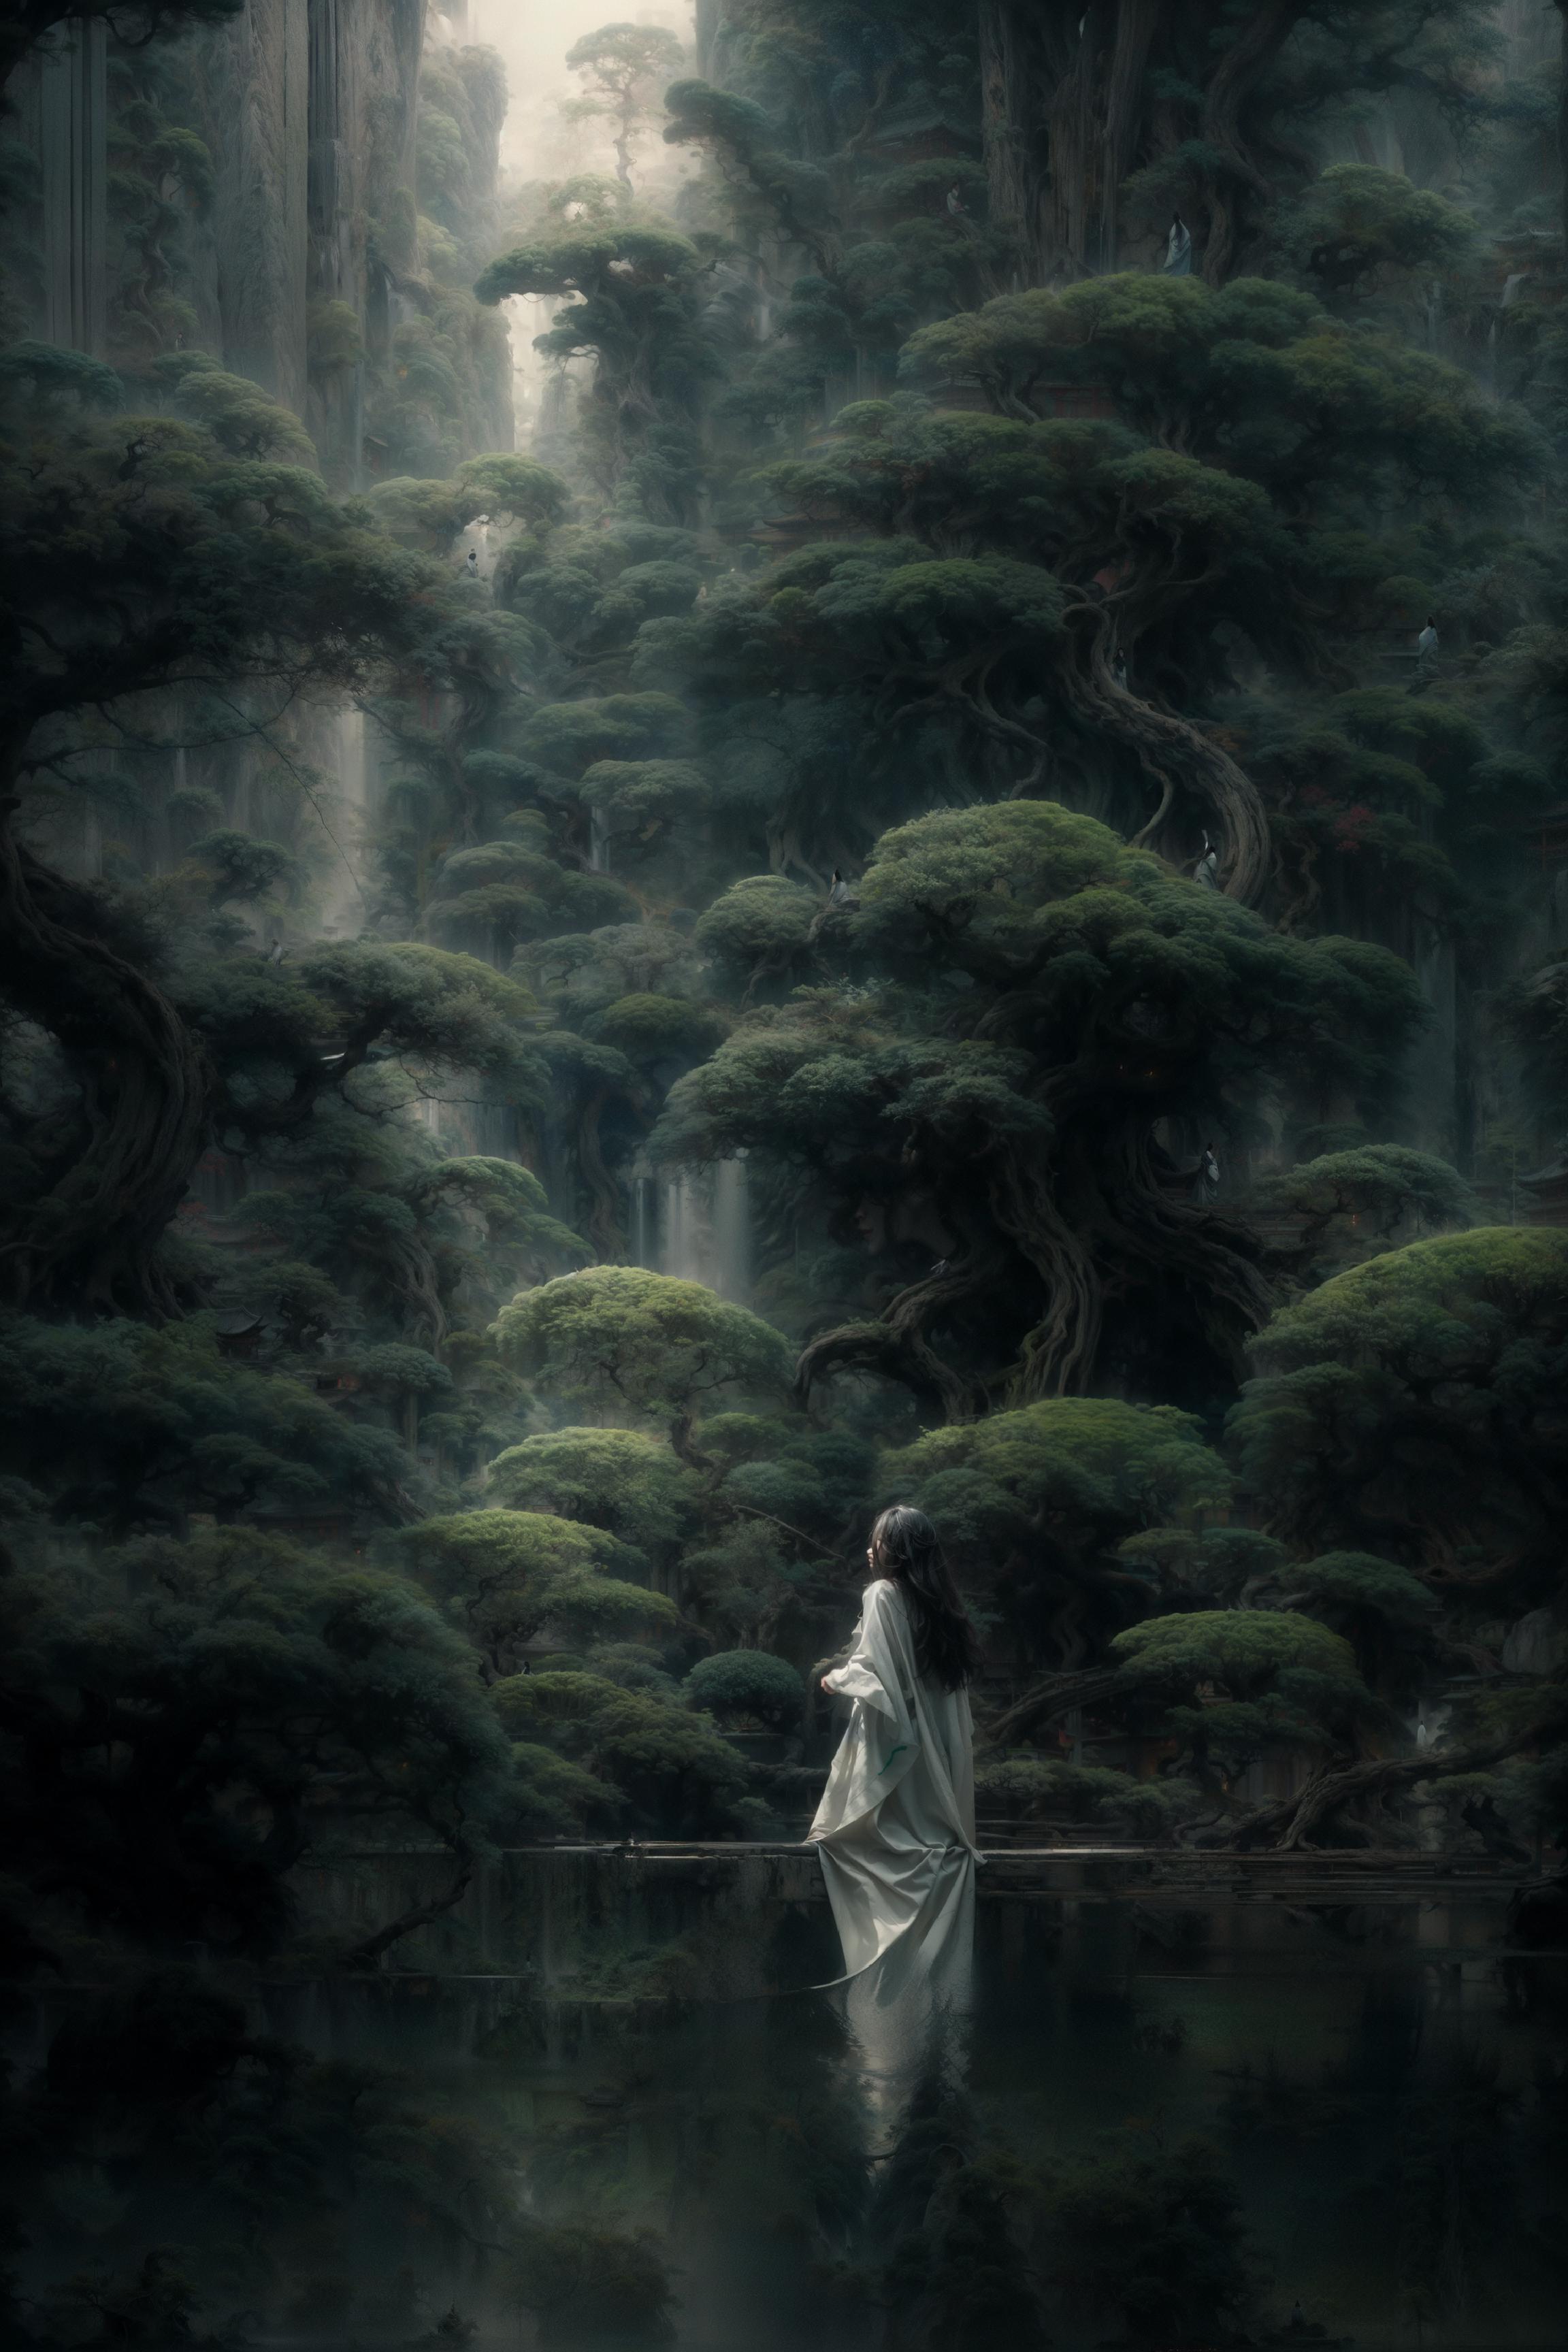 绪儿-【古风松】【 Gufeng pine 】 theme scenery image by 0_vortex